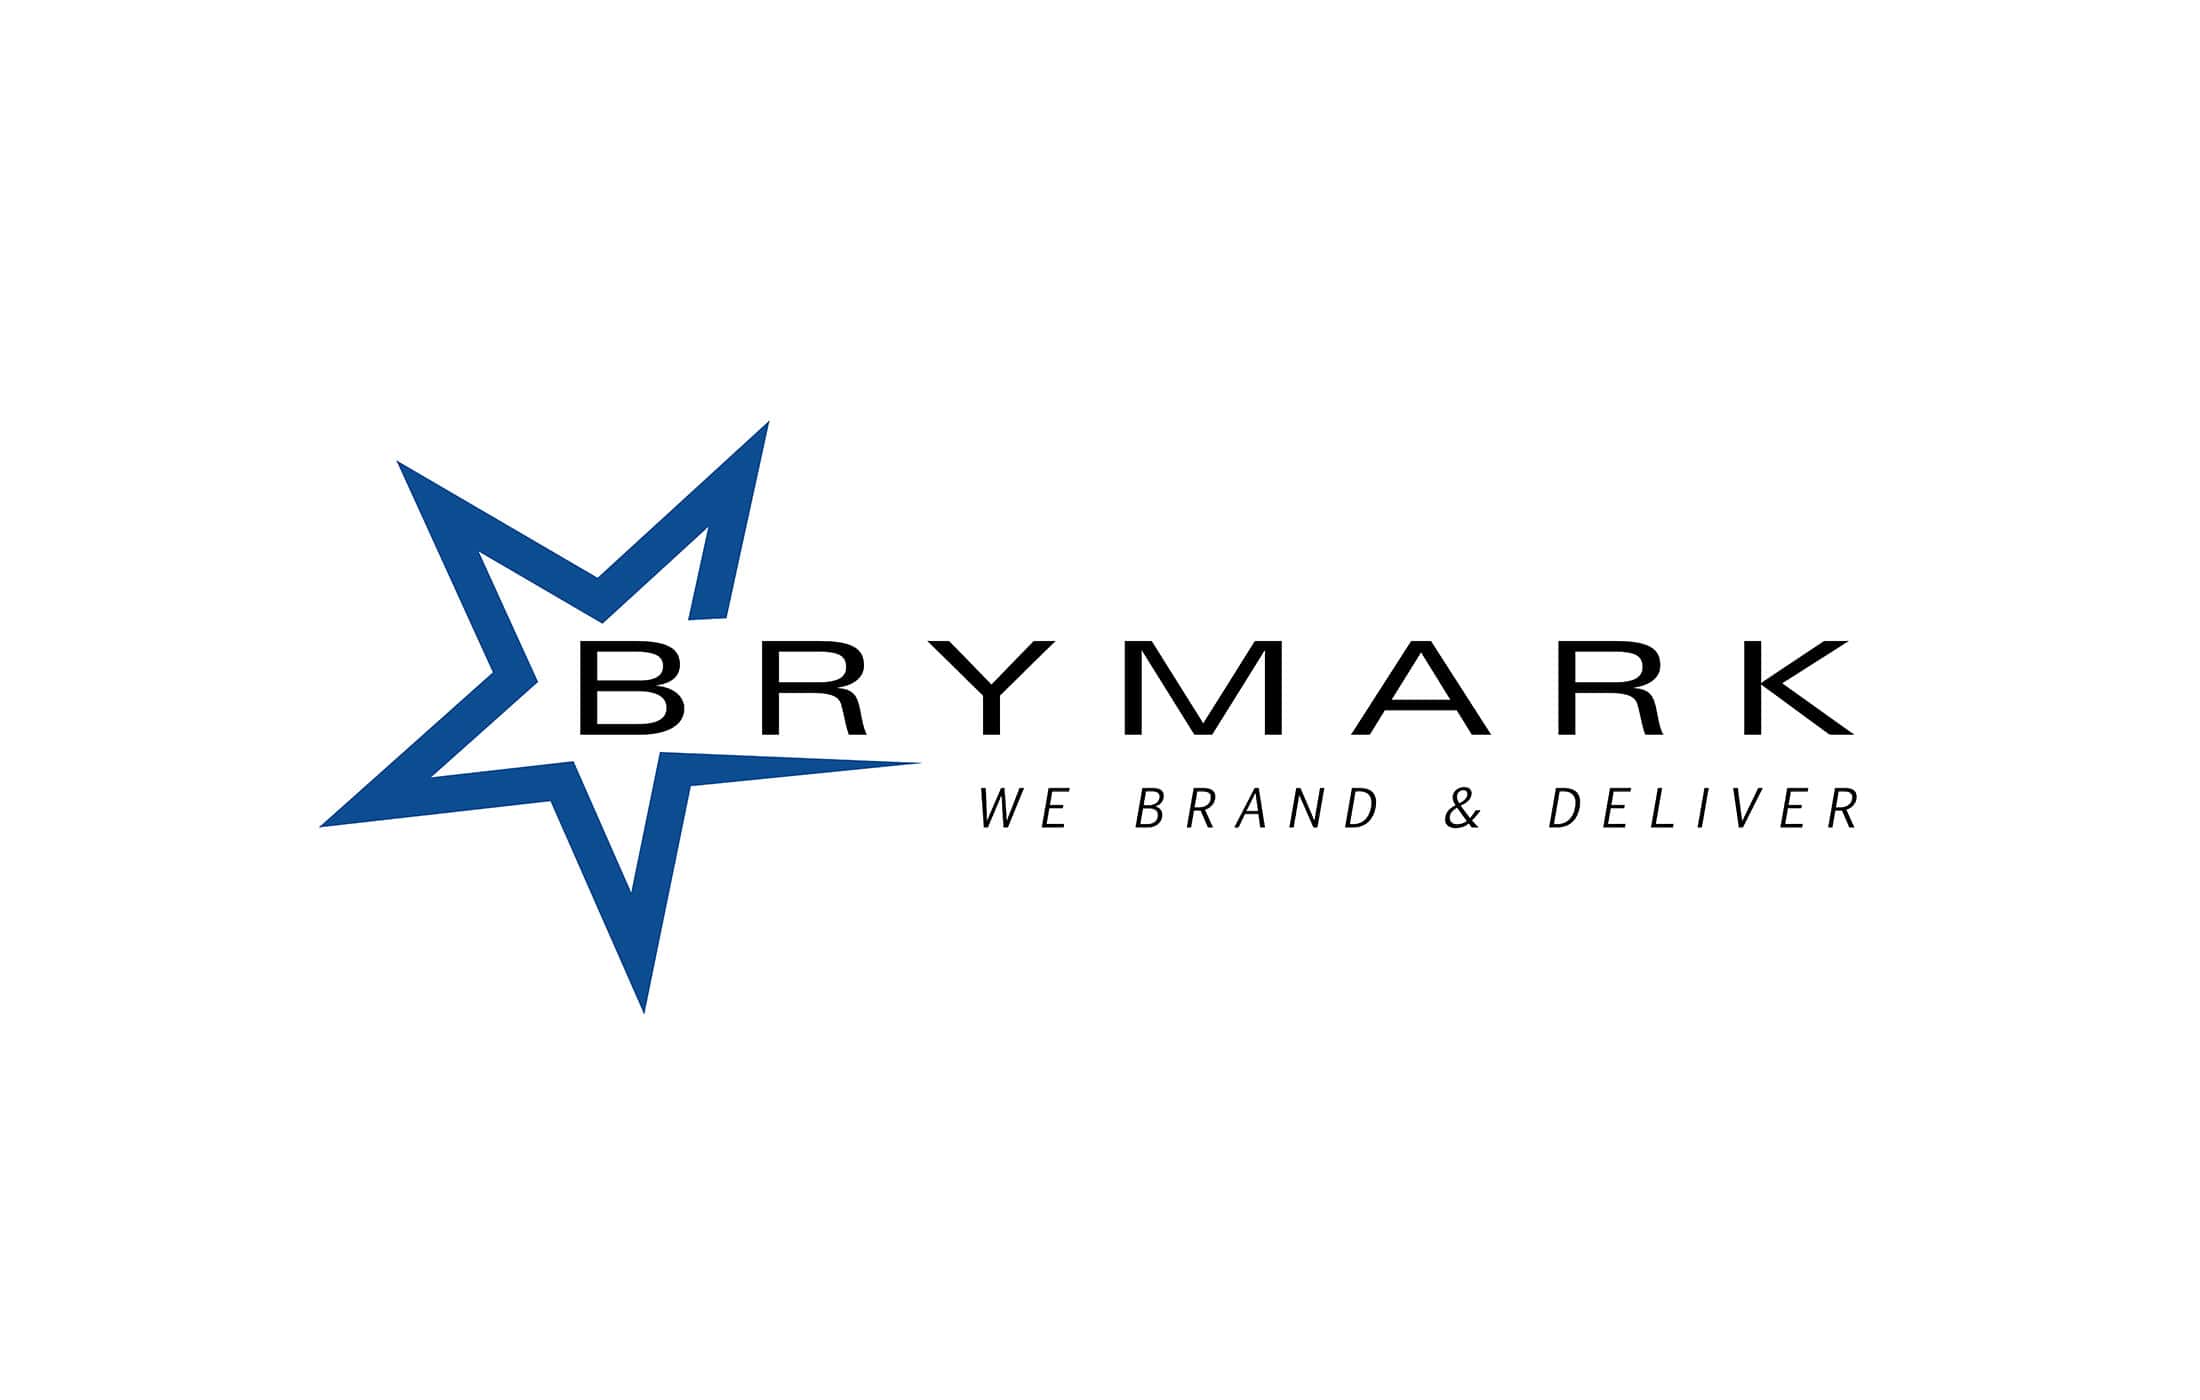 (c) Brymark.com